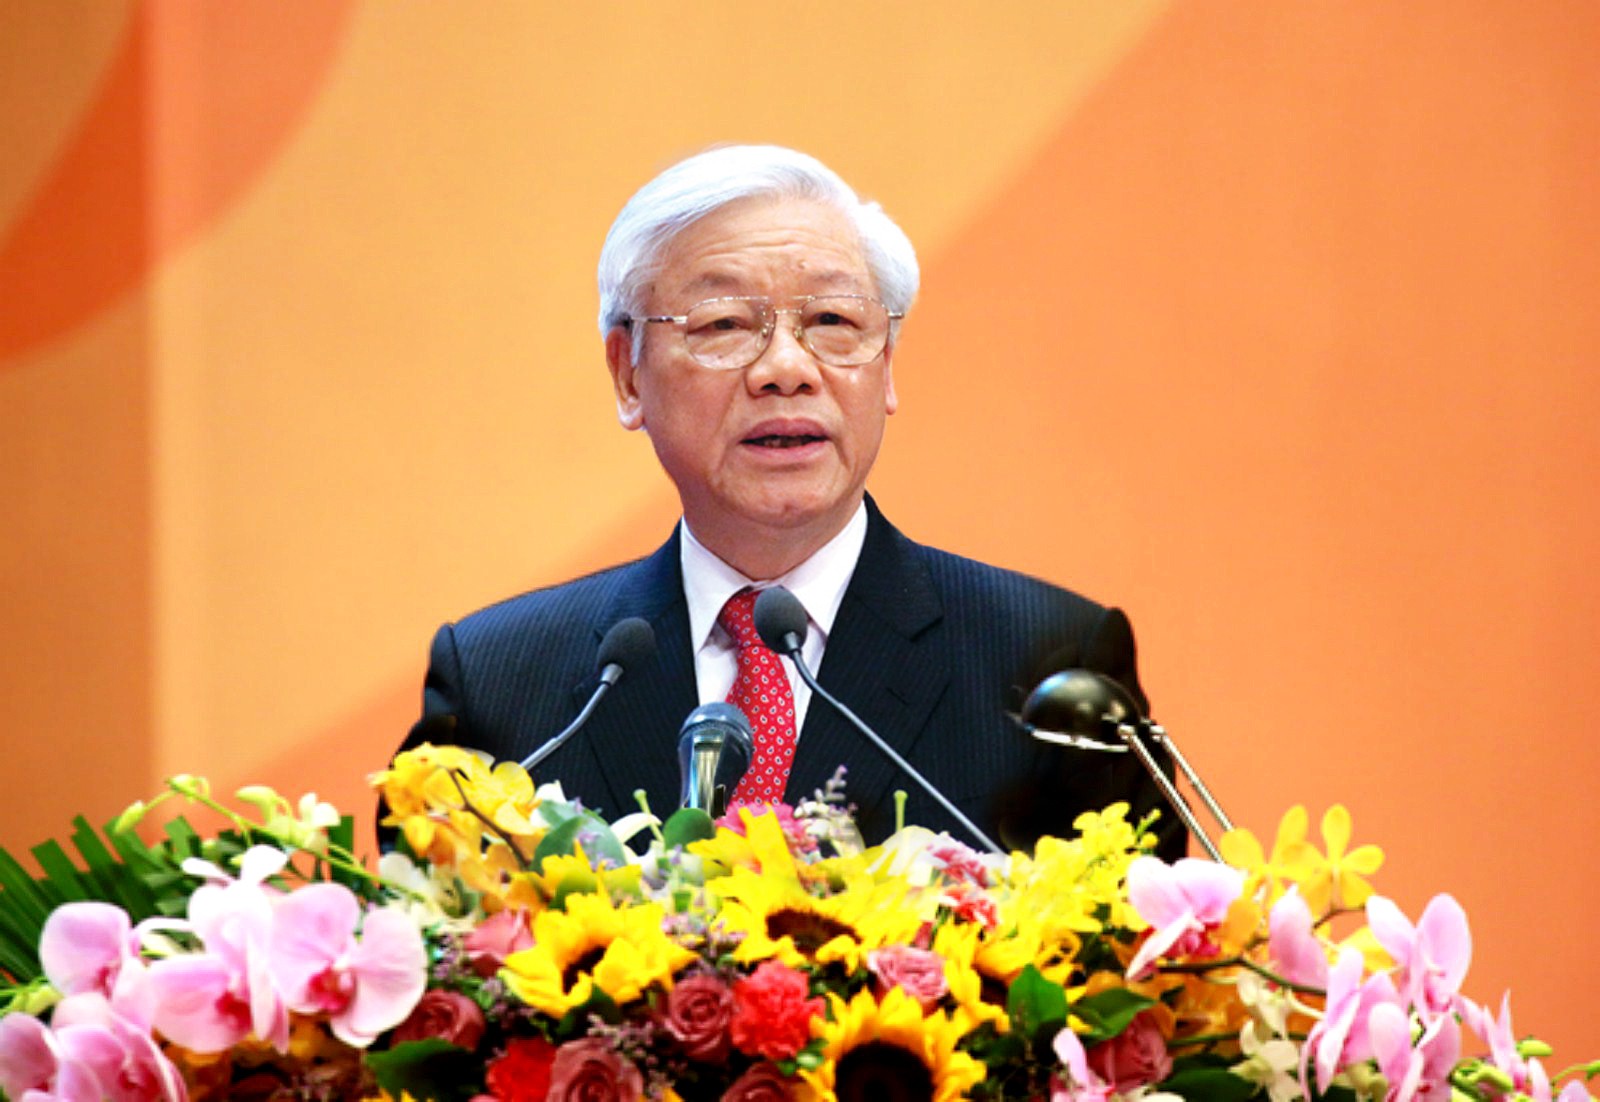 Tổng Bí thư, Chủ tịch nước Nguyễn Phú Trọng gửi Thư chúc mừng Hội Nhà báo Việt Nam